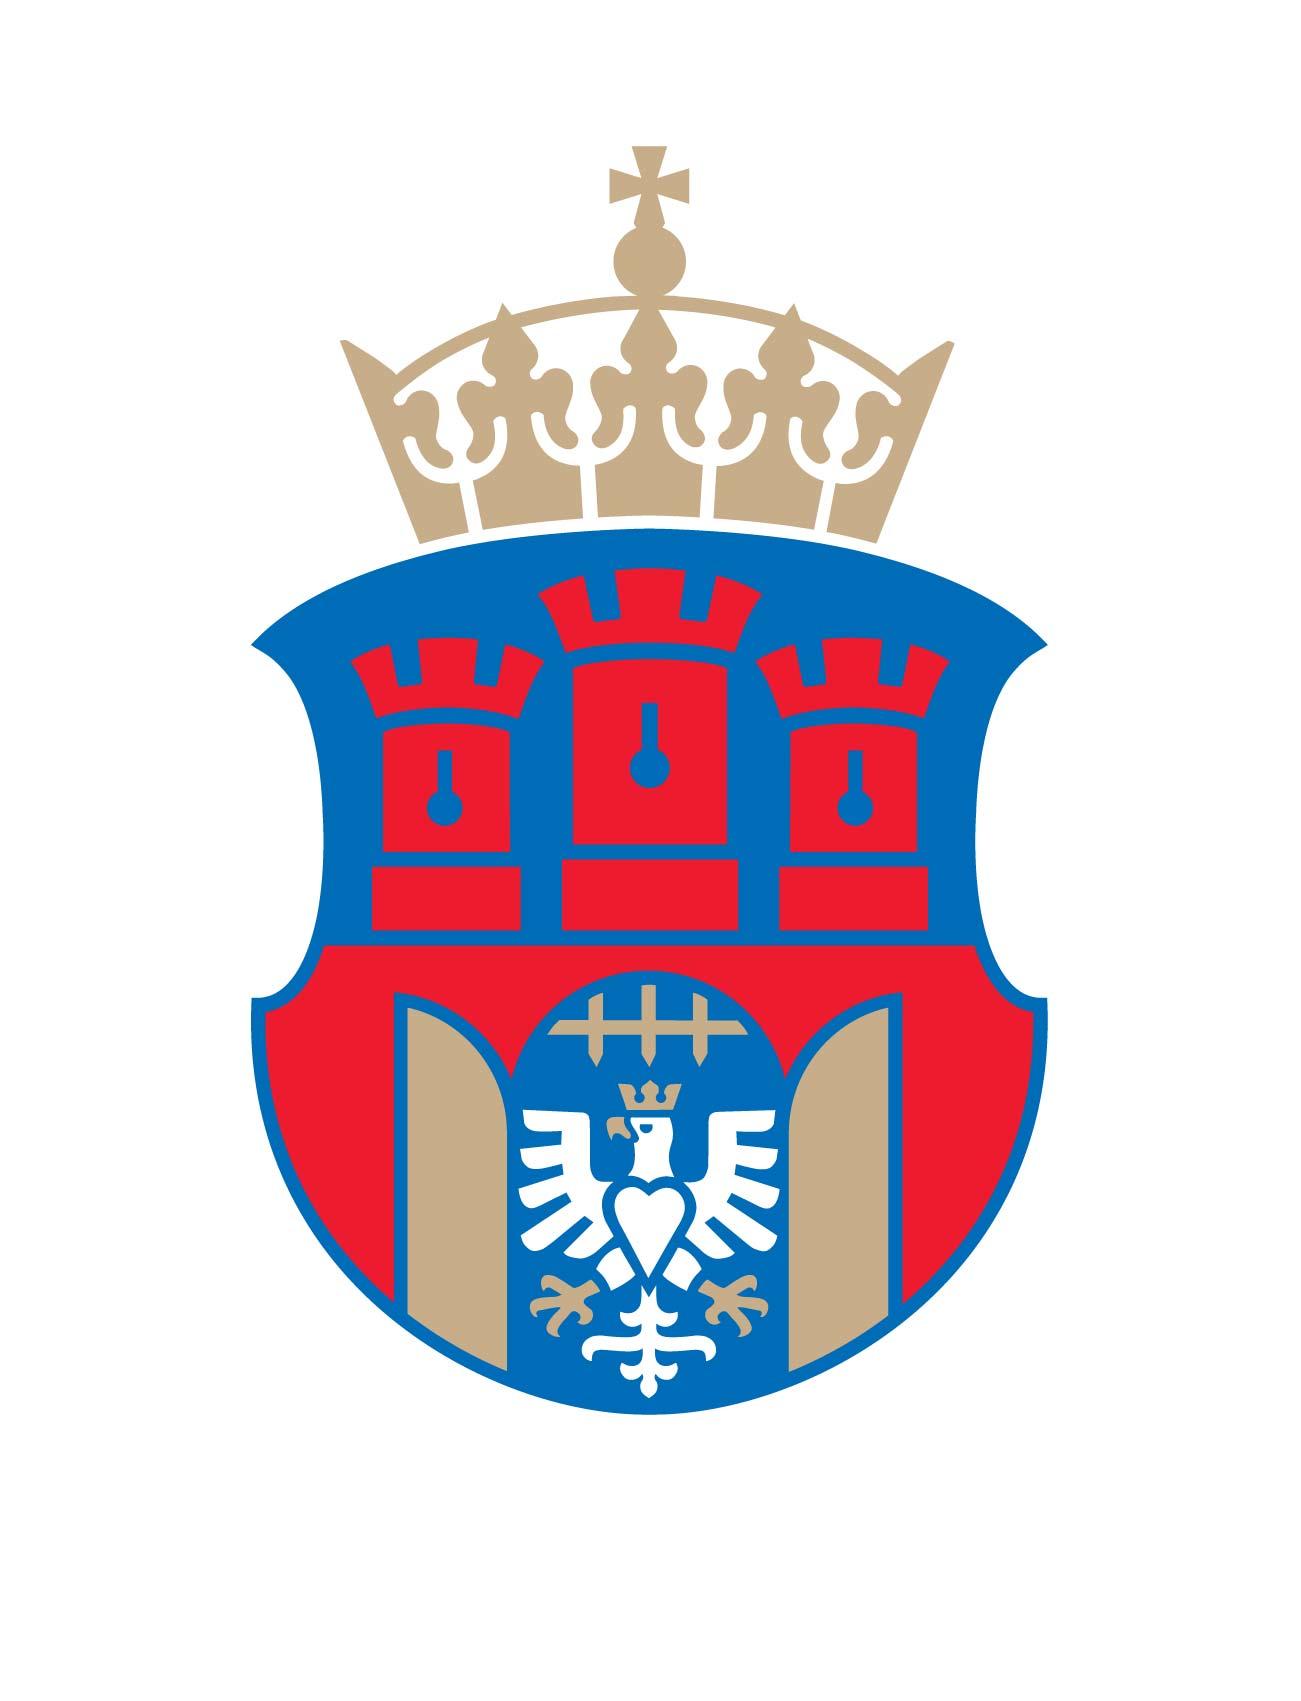 Rada Miasta Krakowa